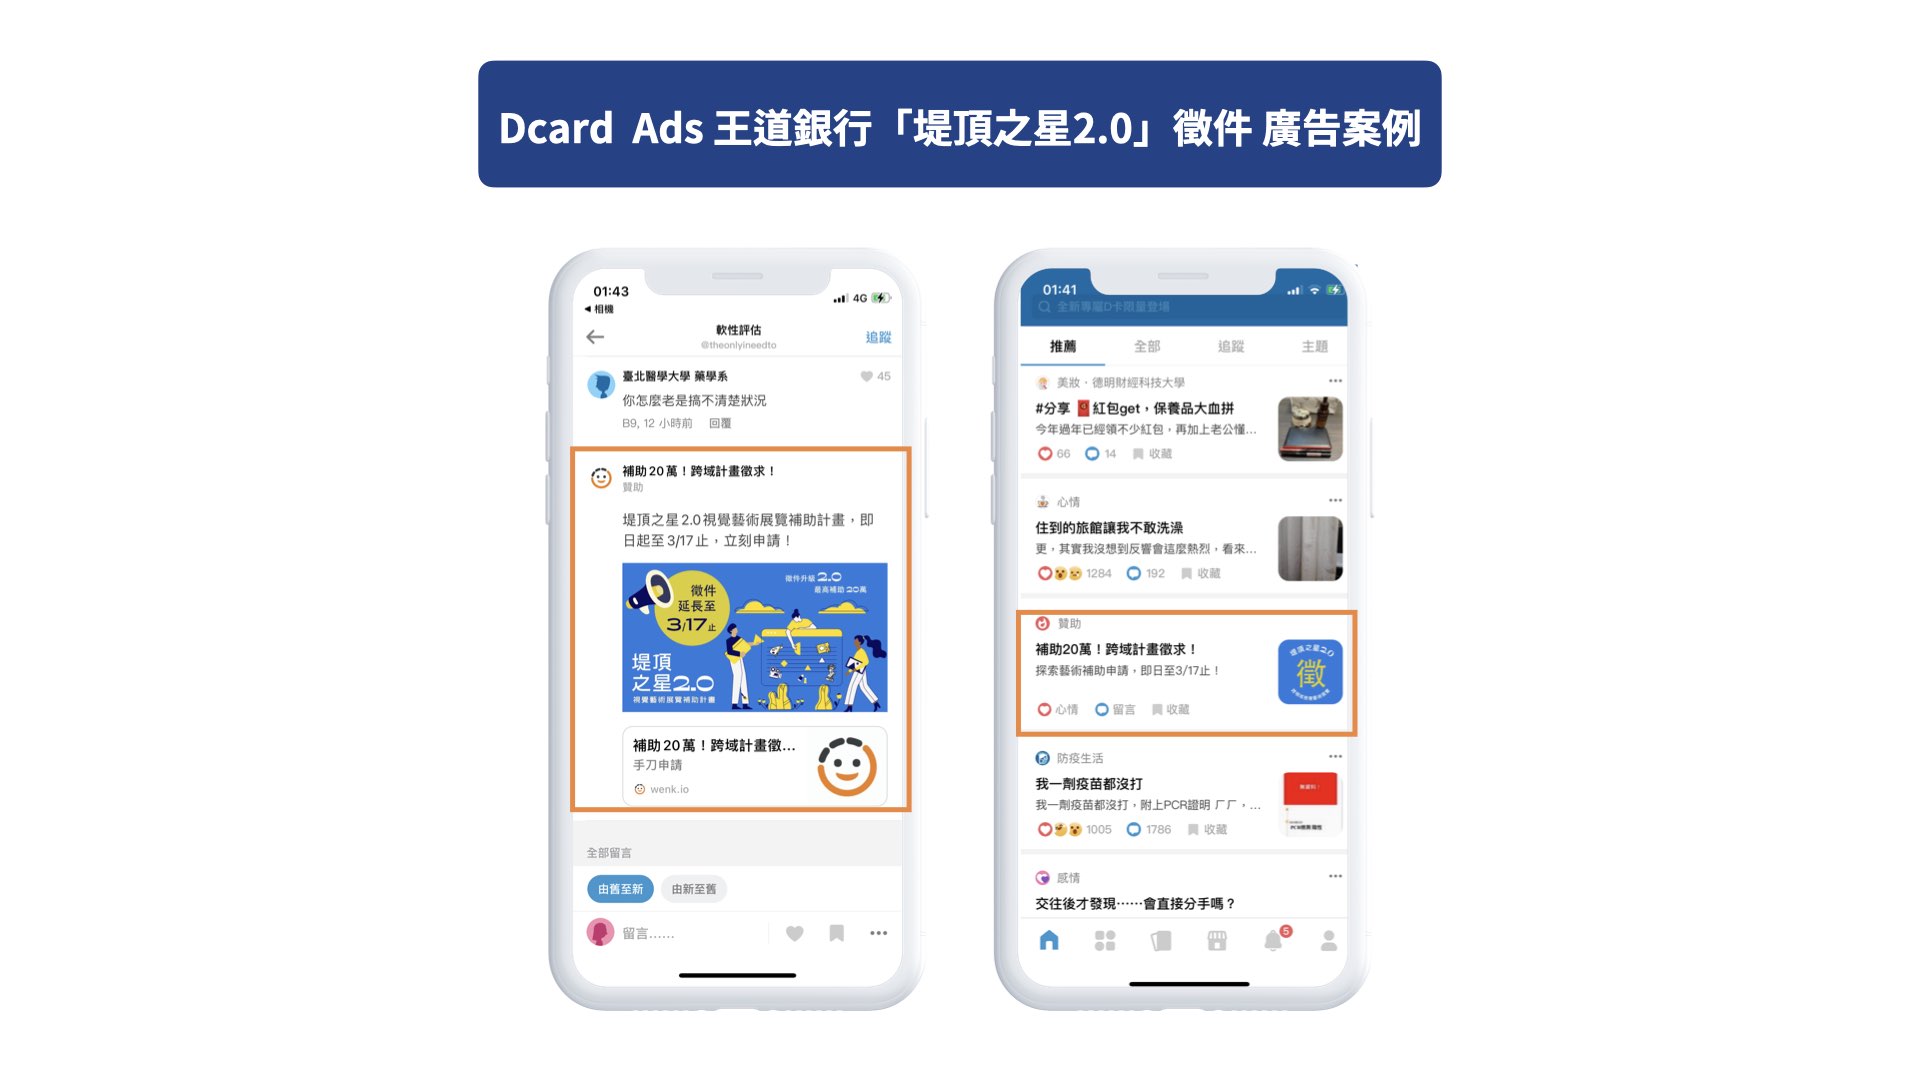 Dcard Ads 王道銀行：【堤頂之星2.0】藝術徵件計畫 廣告案例